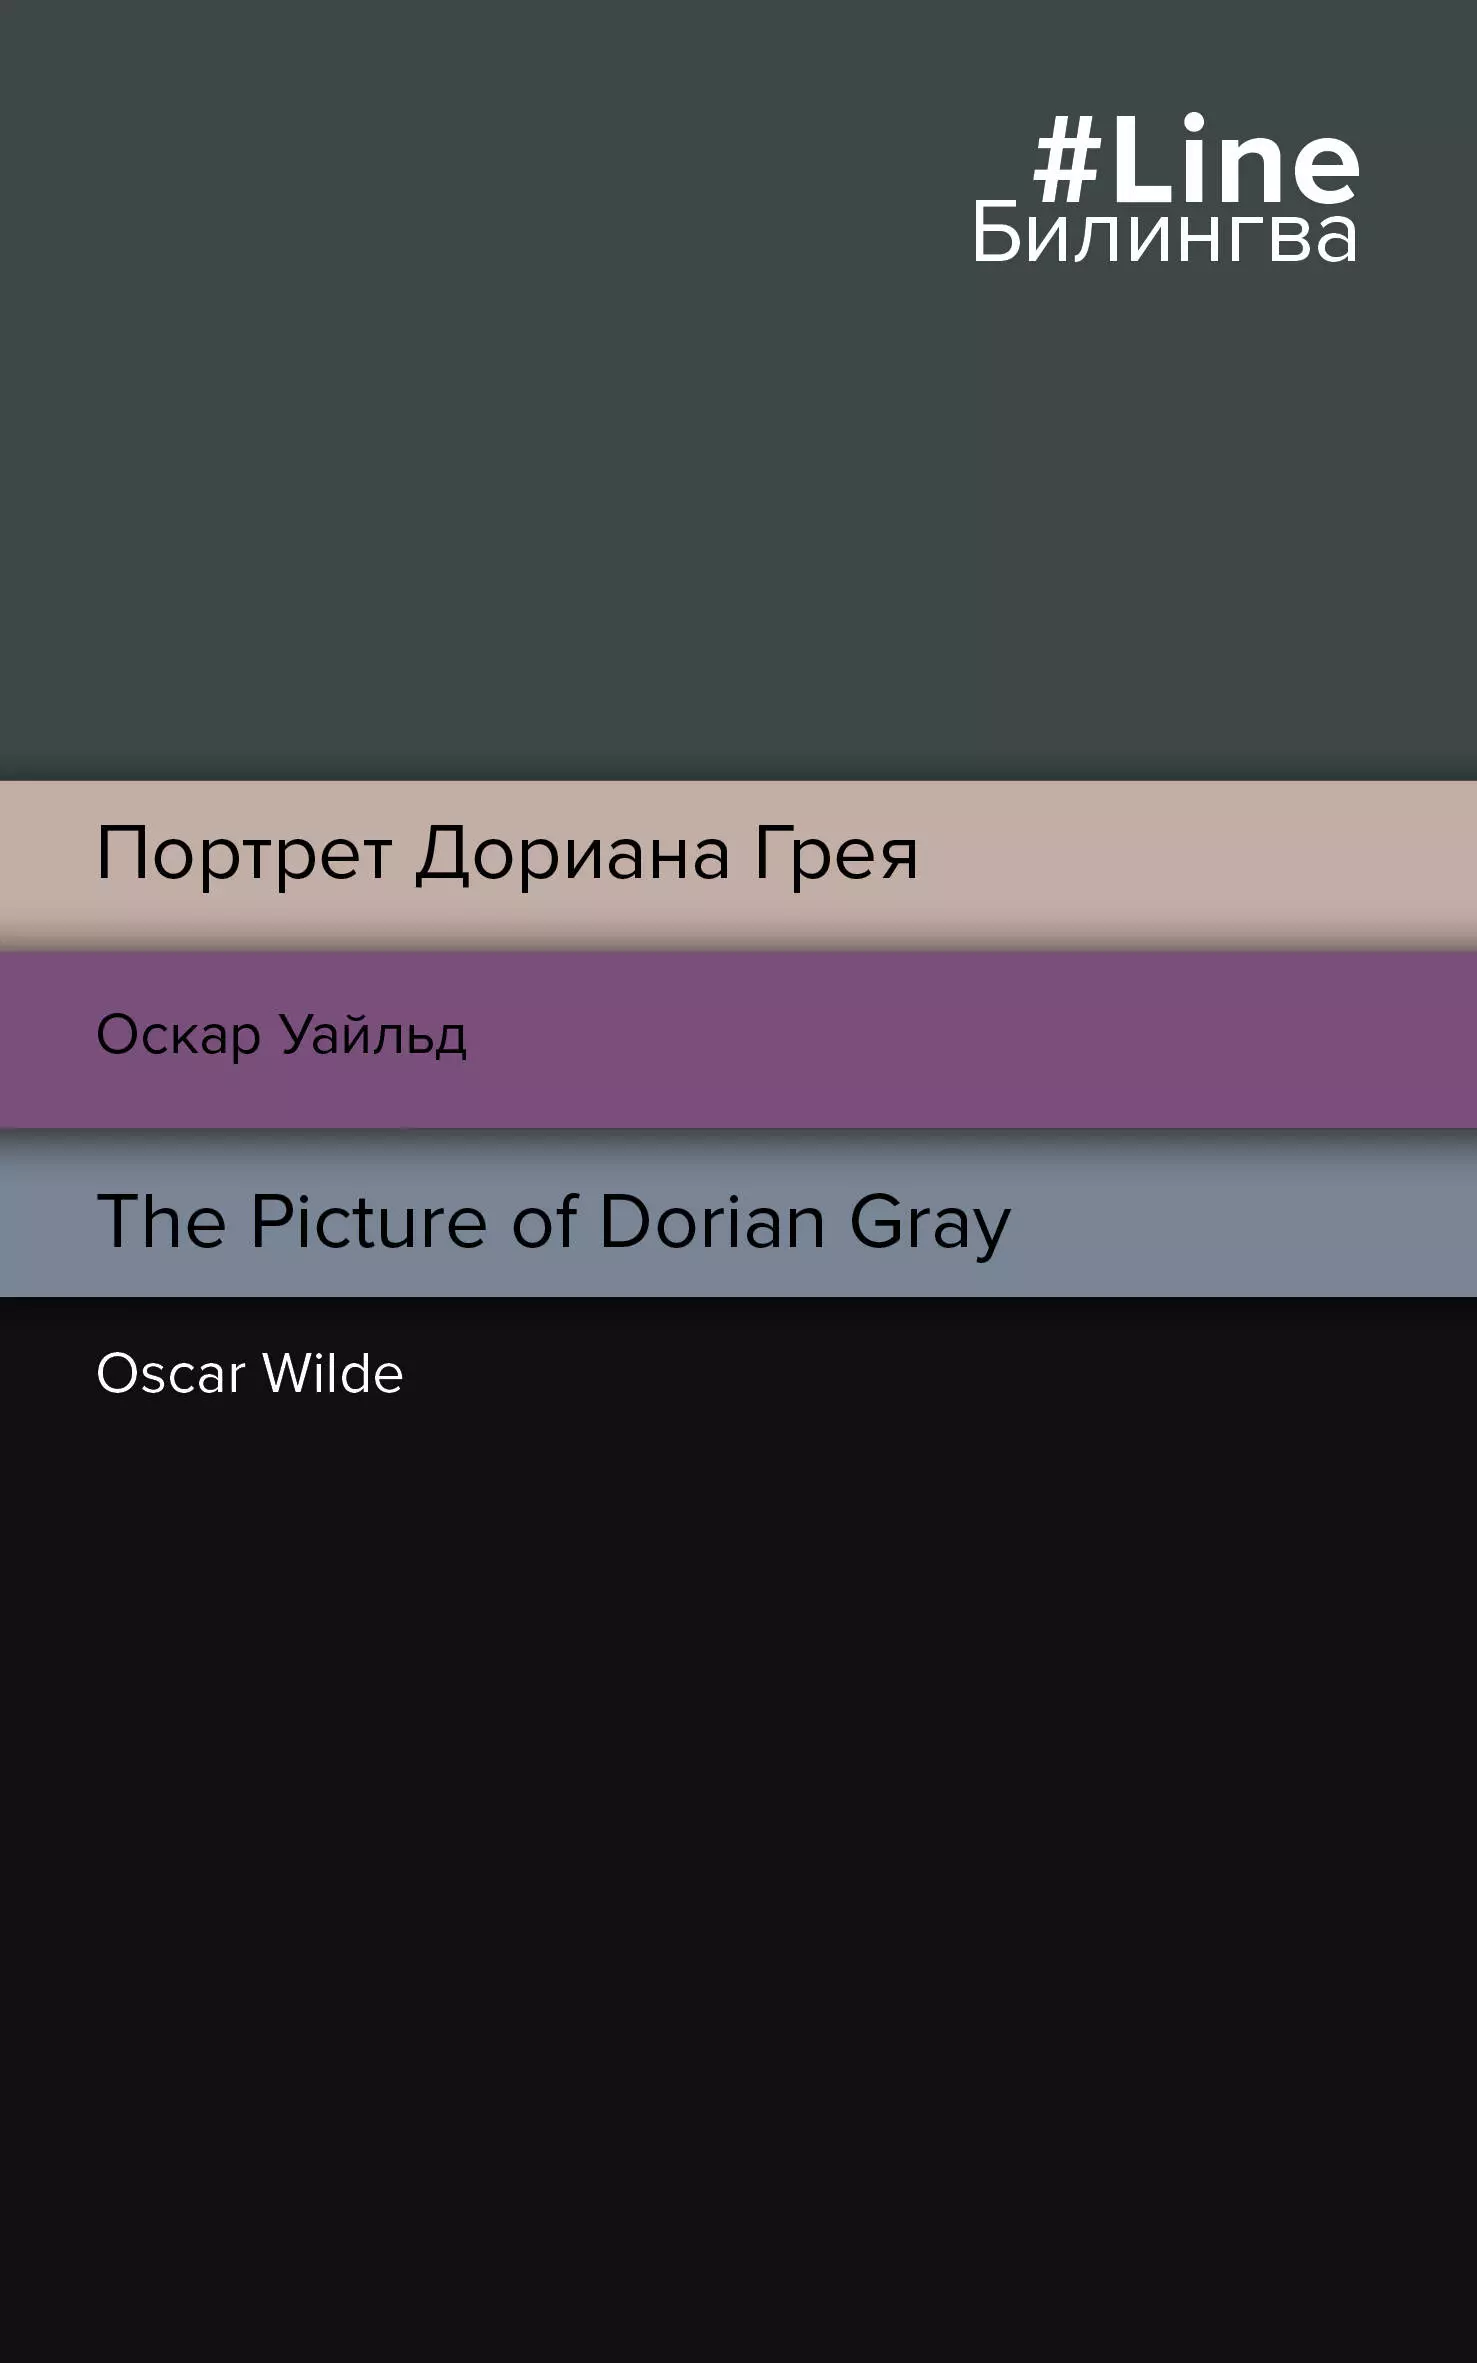 Уайльд Оскар Портрет Дориана Грея = The Picture of Dorian Gray уайльд оскар the picture of dorian gray портрет дориана грея